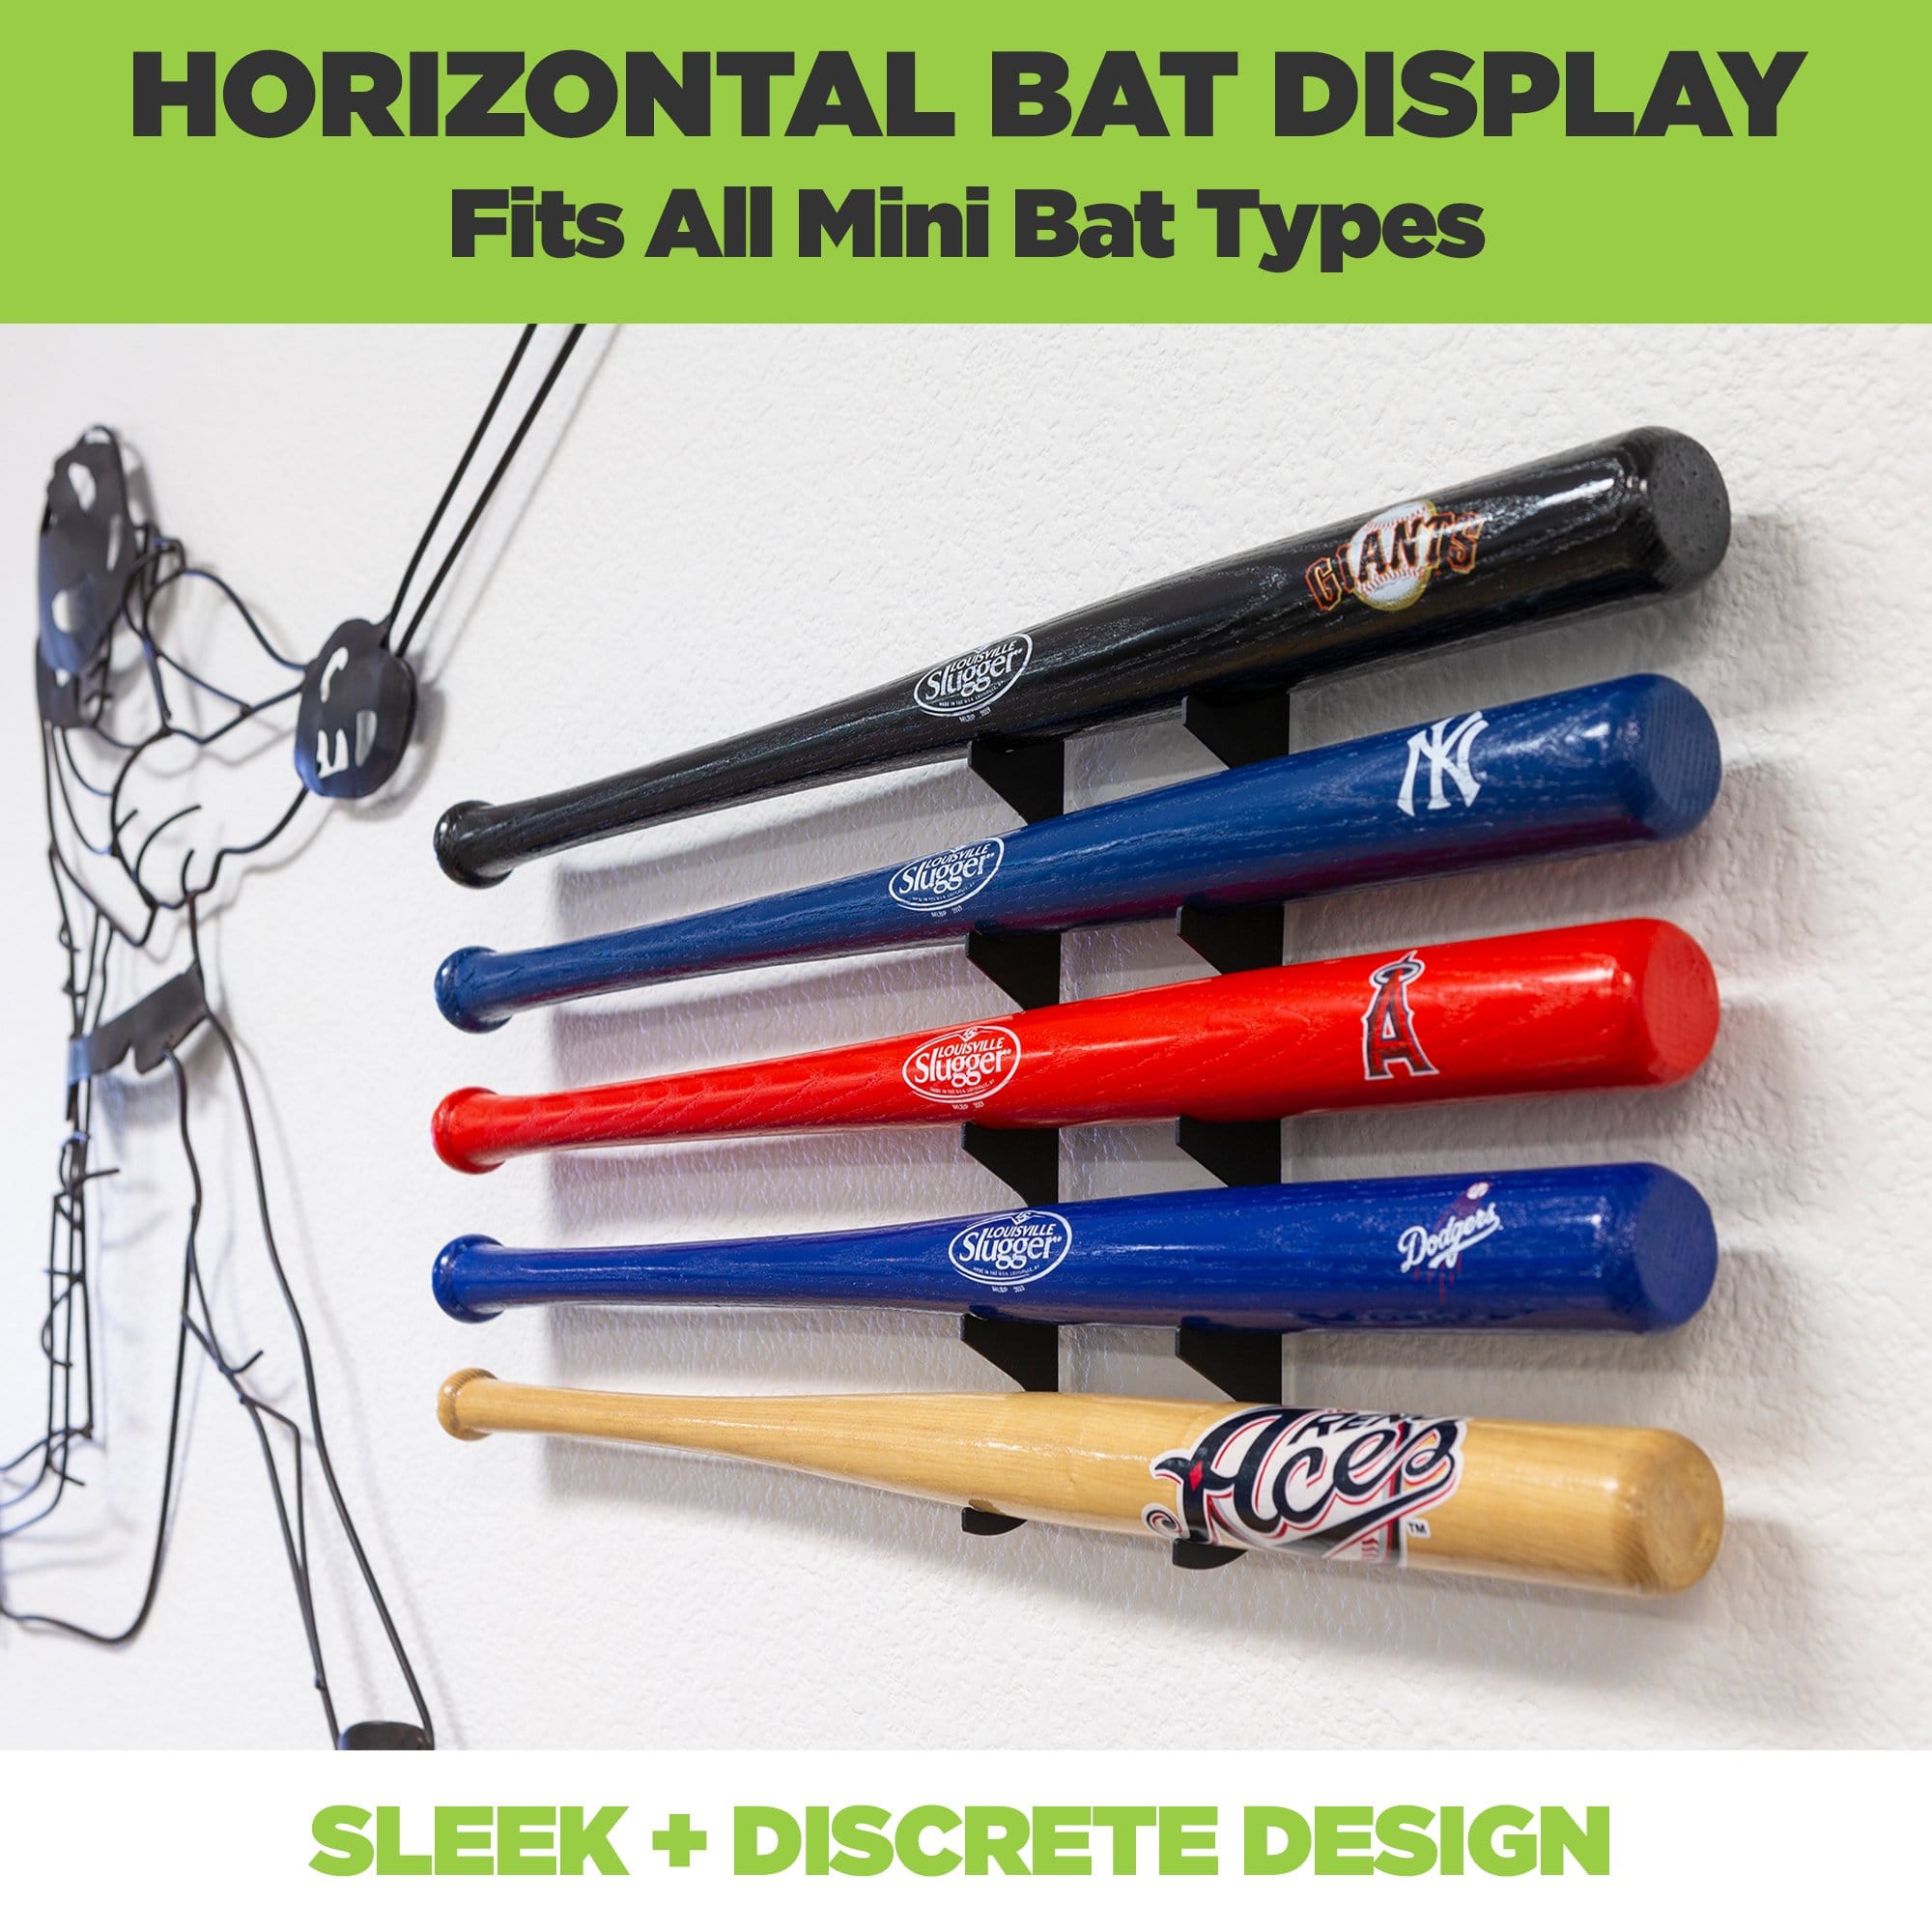 HIDEit Mini Bat, Horizontal Mini Bat Mount